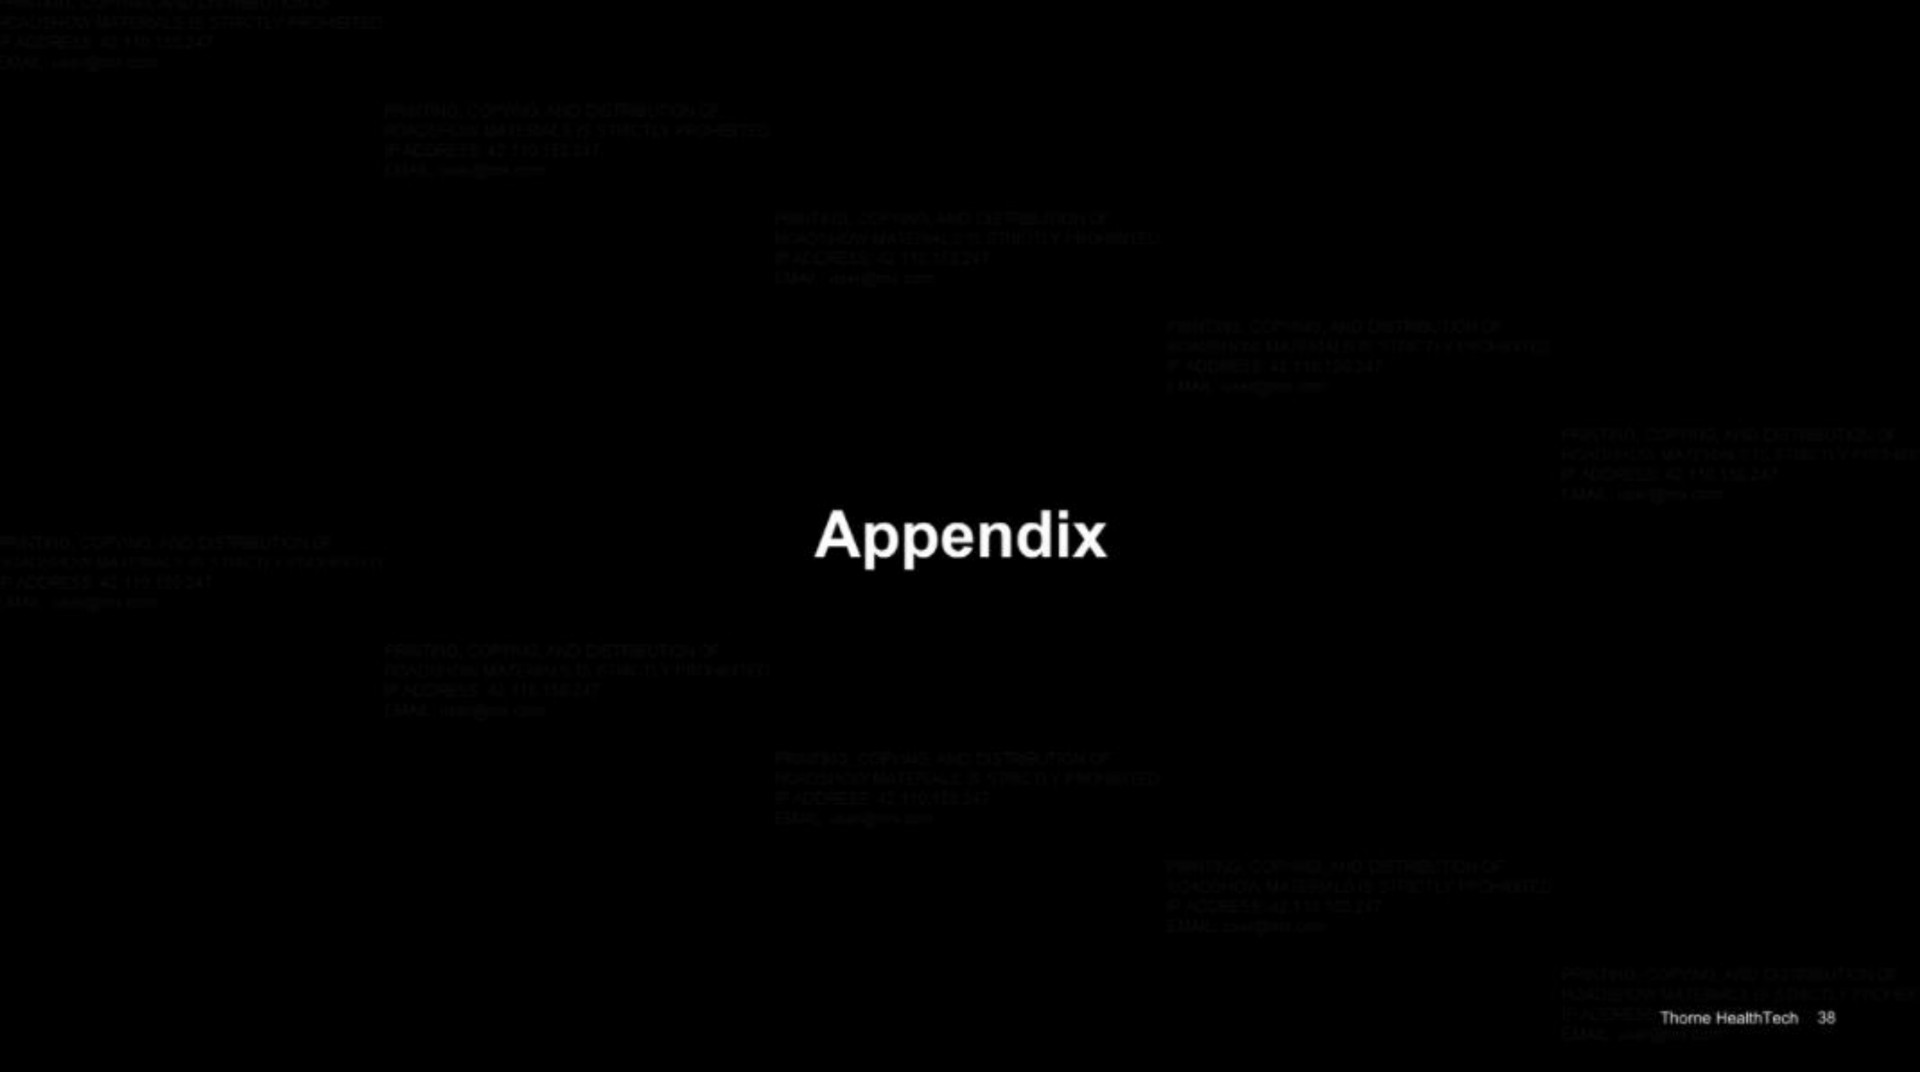 appendix | Thorne HealthTech